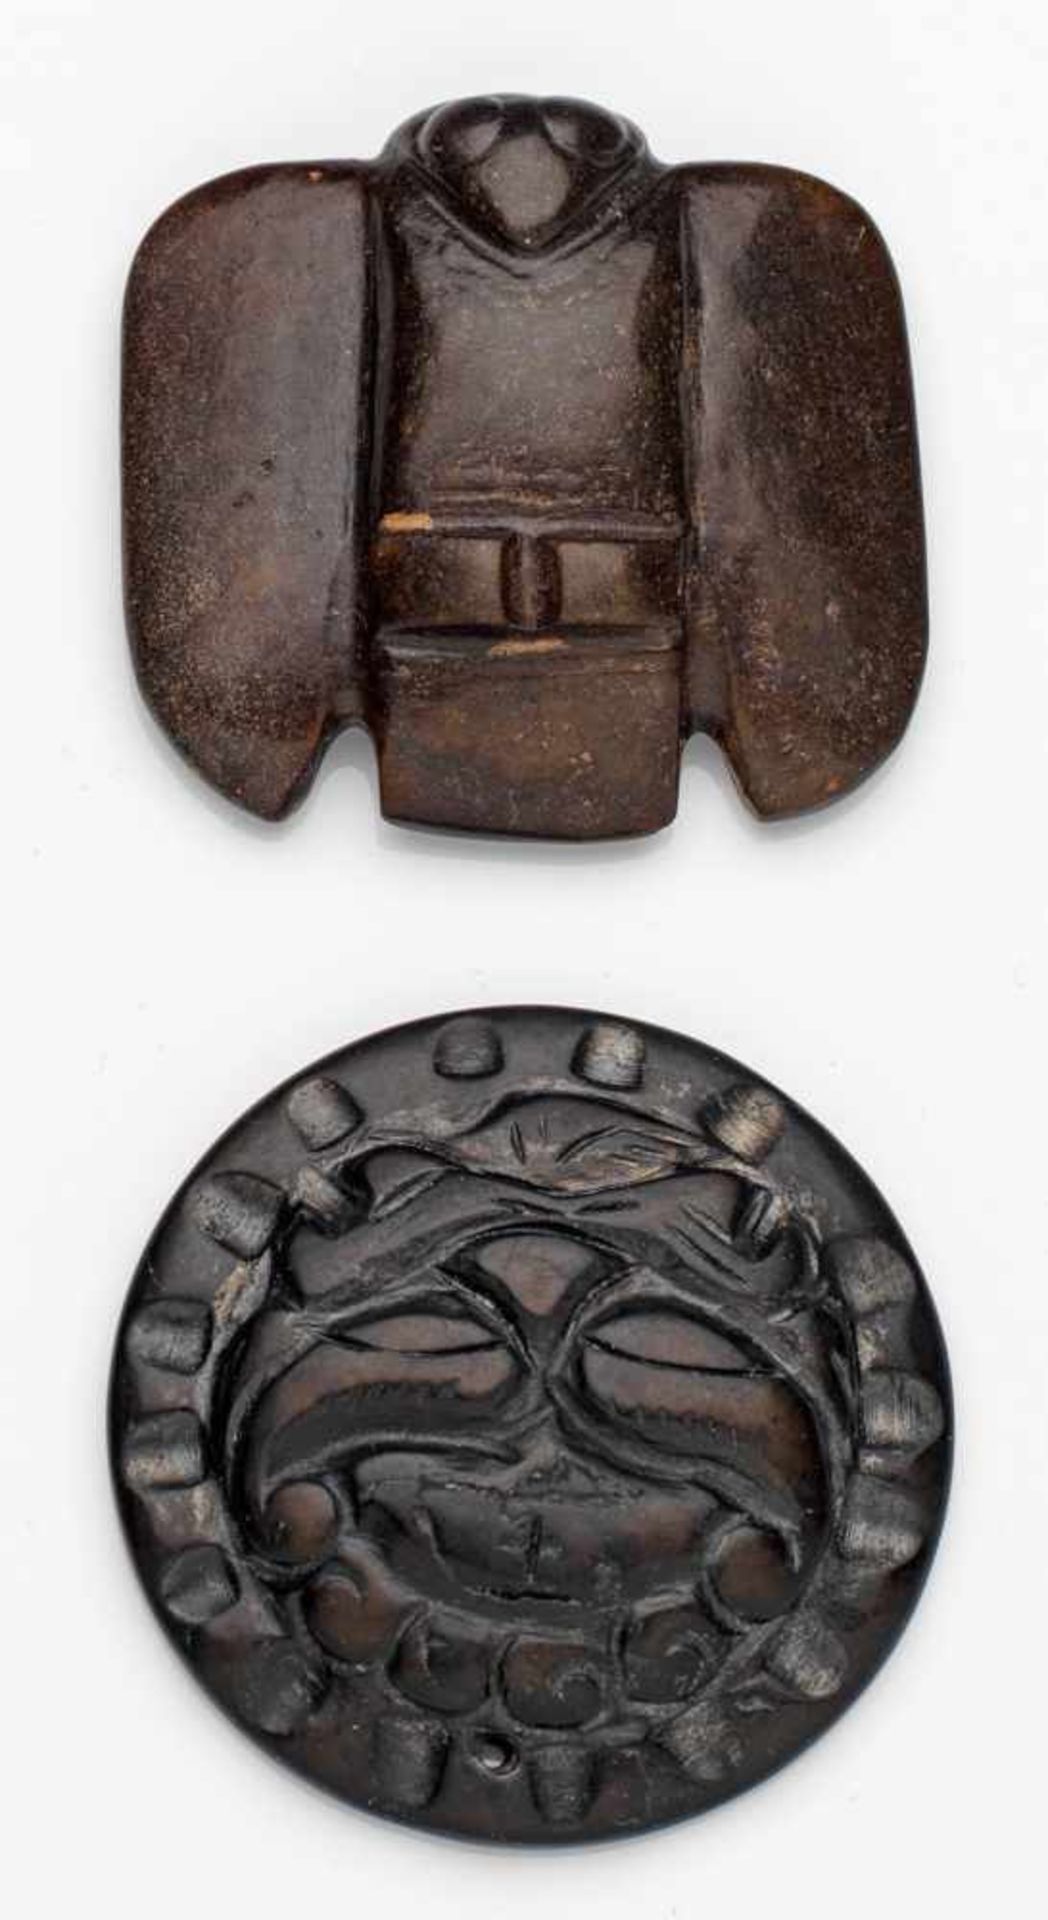 Zwei AnhängerDunkelbraune Nephrit-Jade, geschnitzt. Schauseitige Darstellung einer Schwalbe bzw.